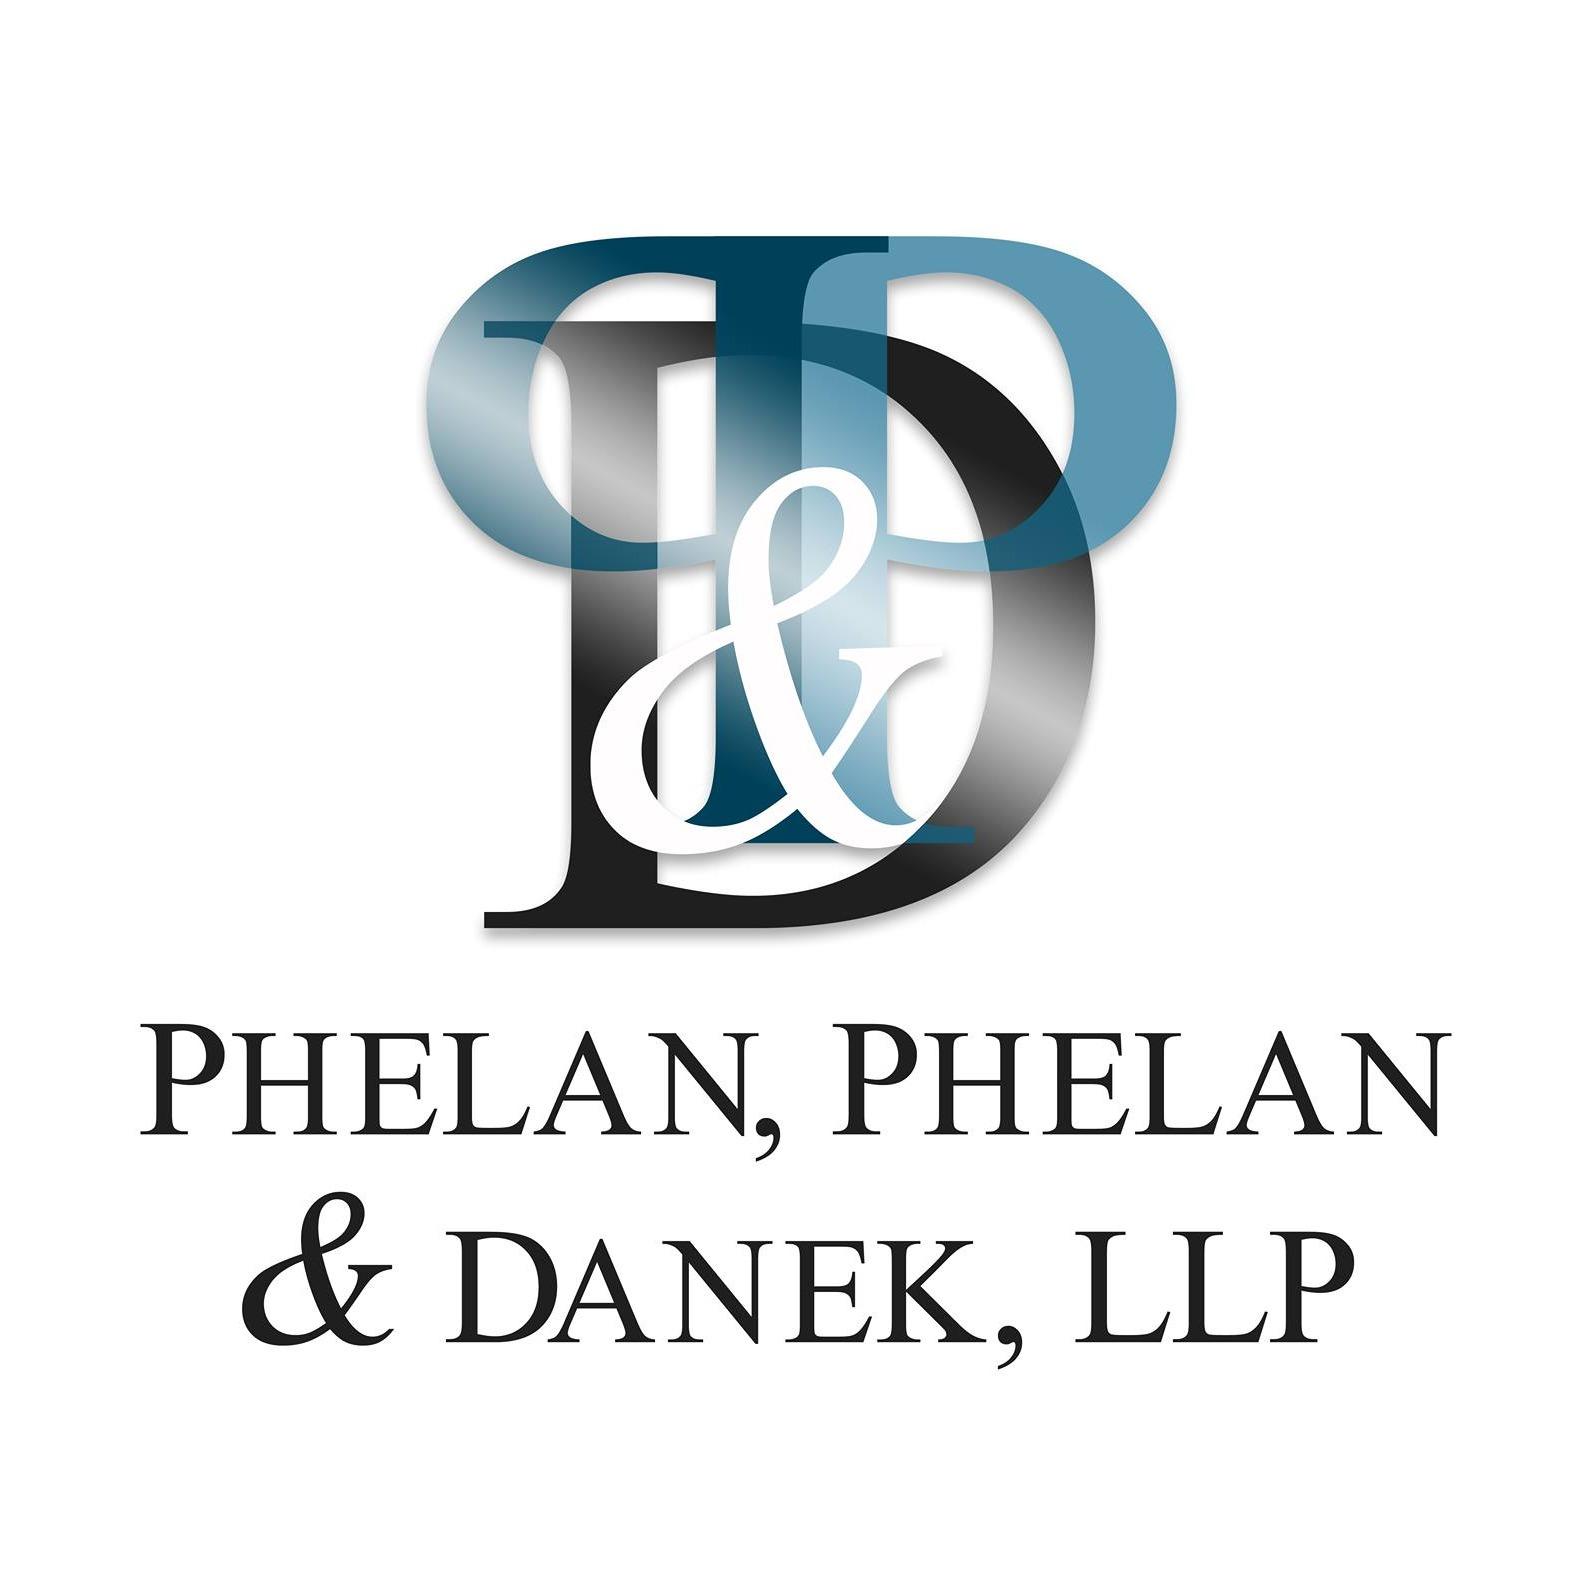 Phelan, Phelan & Danek LLP - Albany, NY 12203 - (518)284-0585 | ShowMeLocal.com